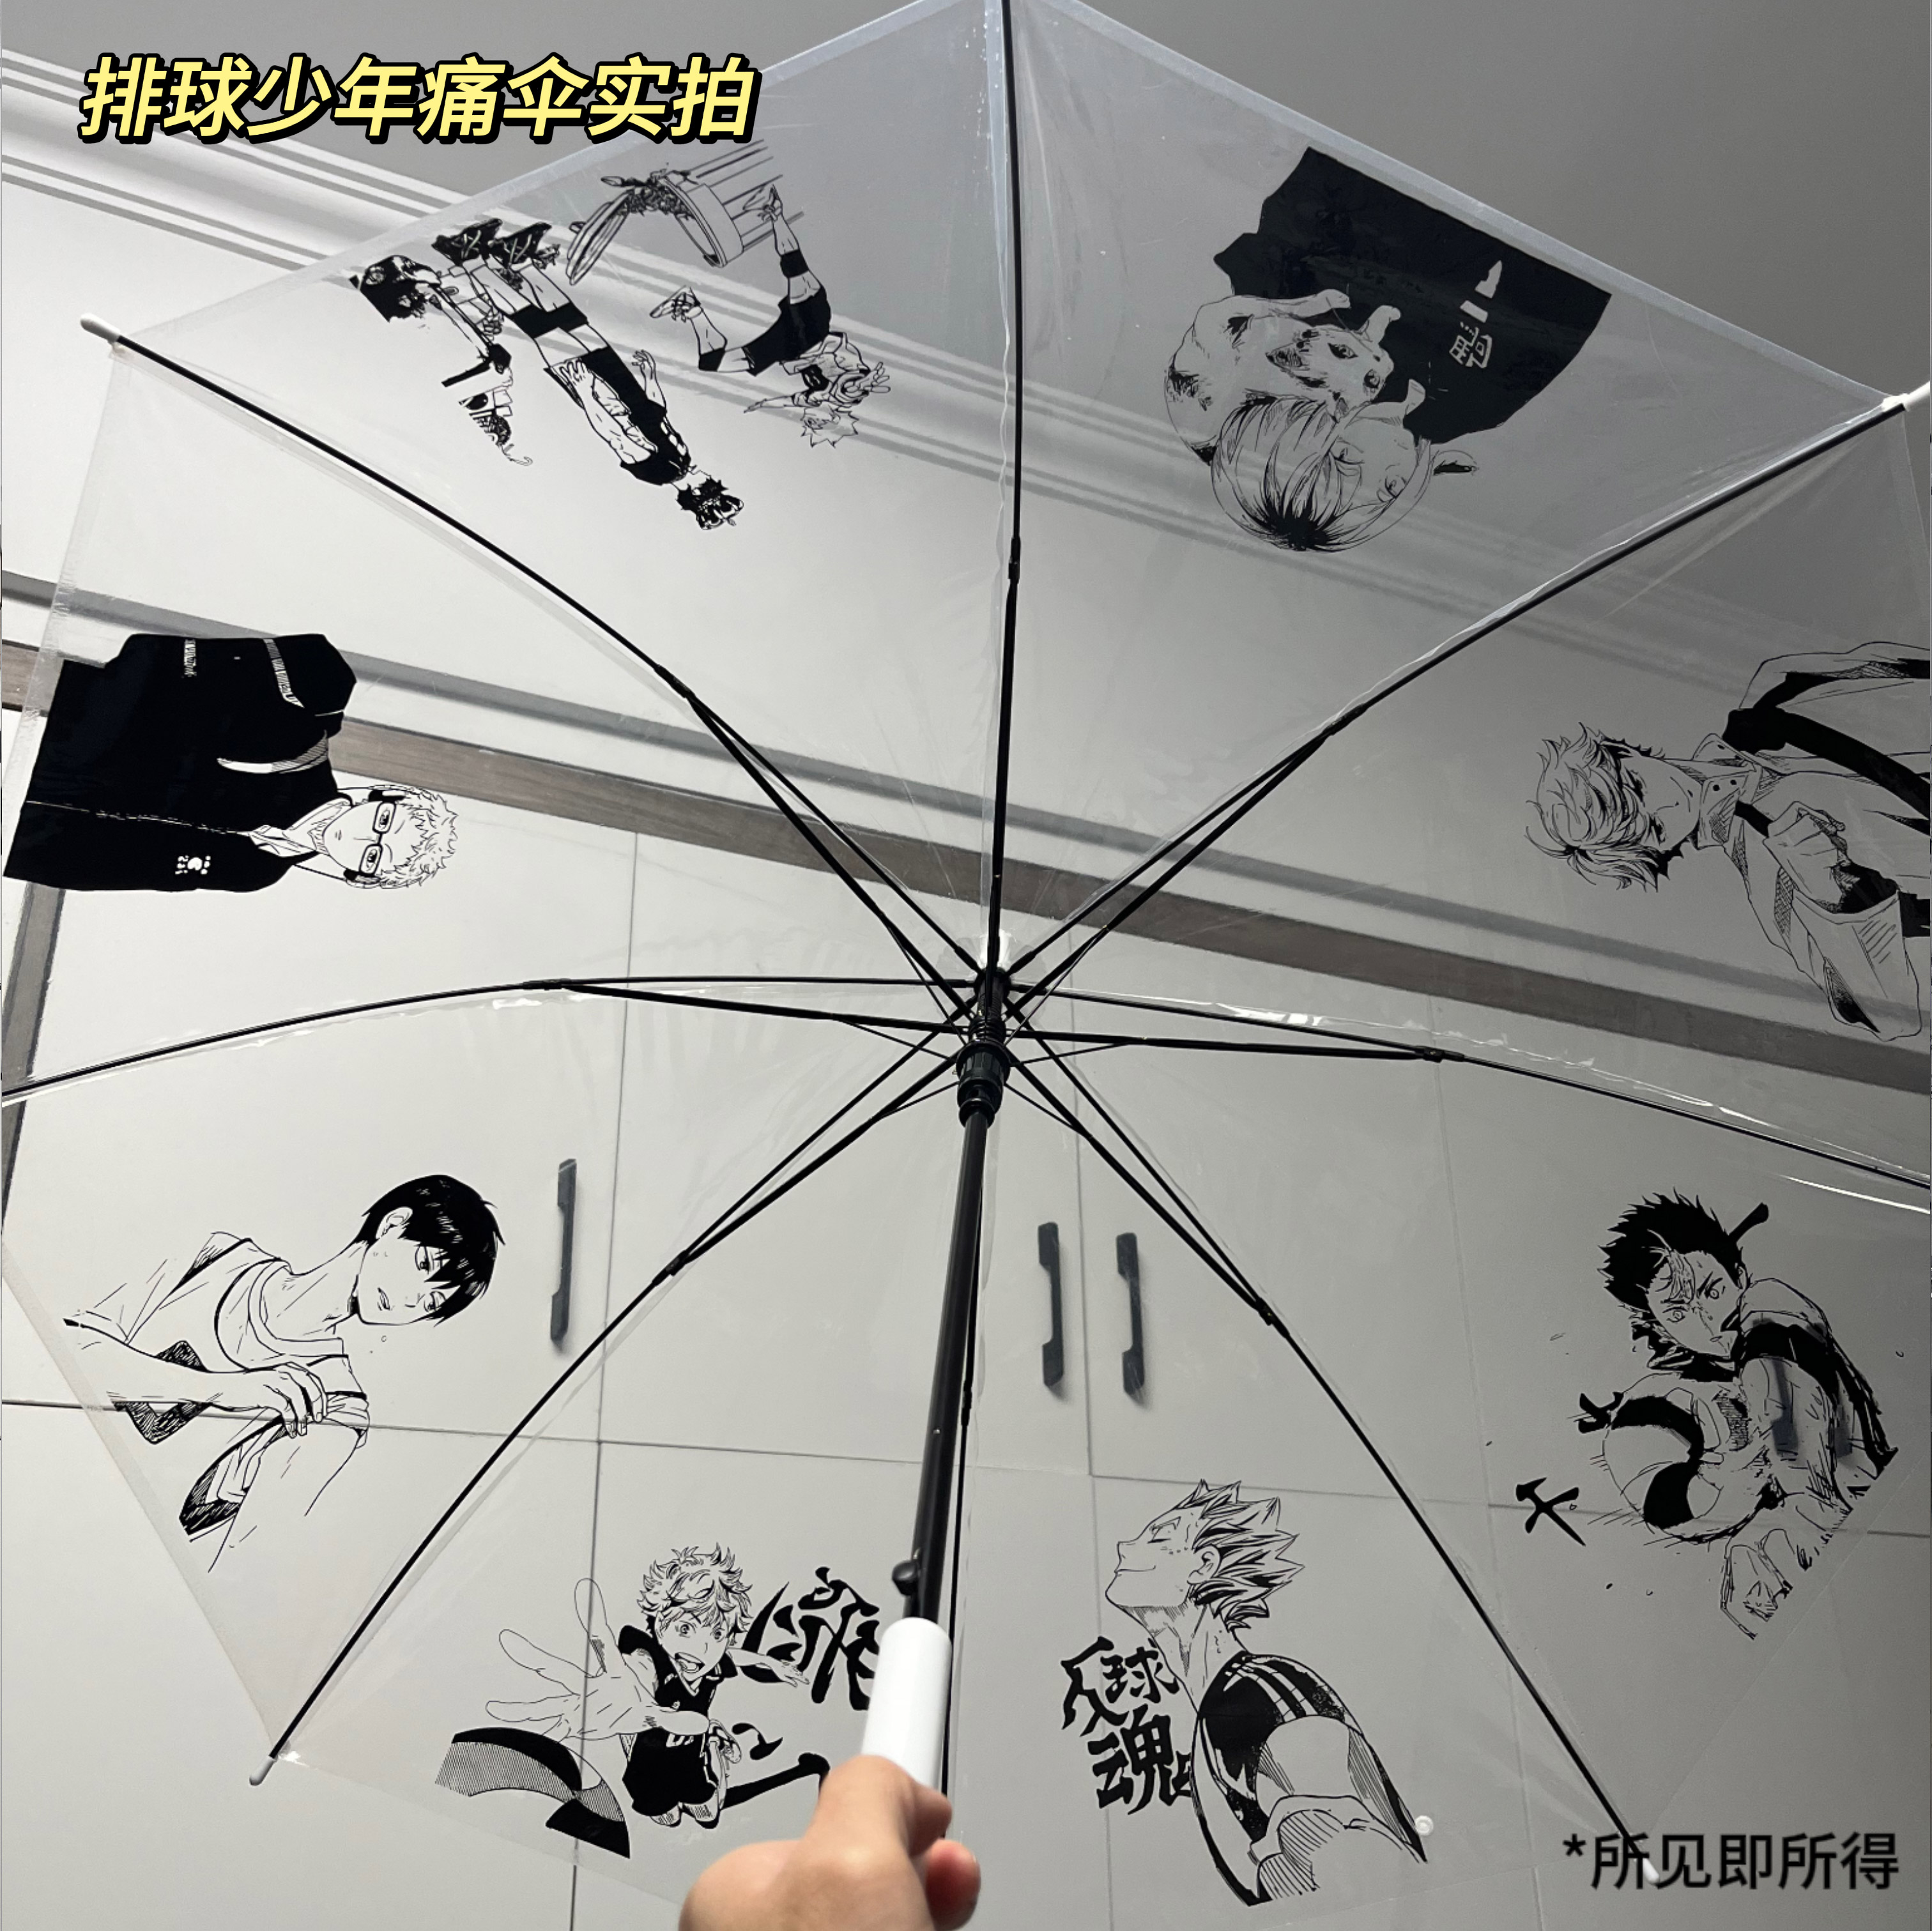 排球少年二次元周边雨伞翔阳绘画痛伞高颜透明伞送朋友创意礼物